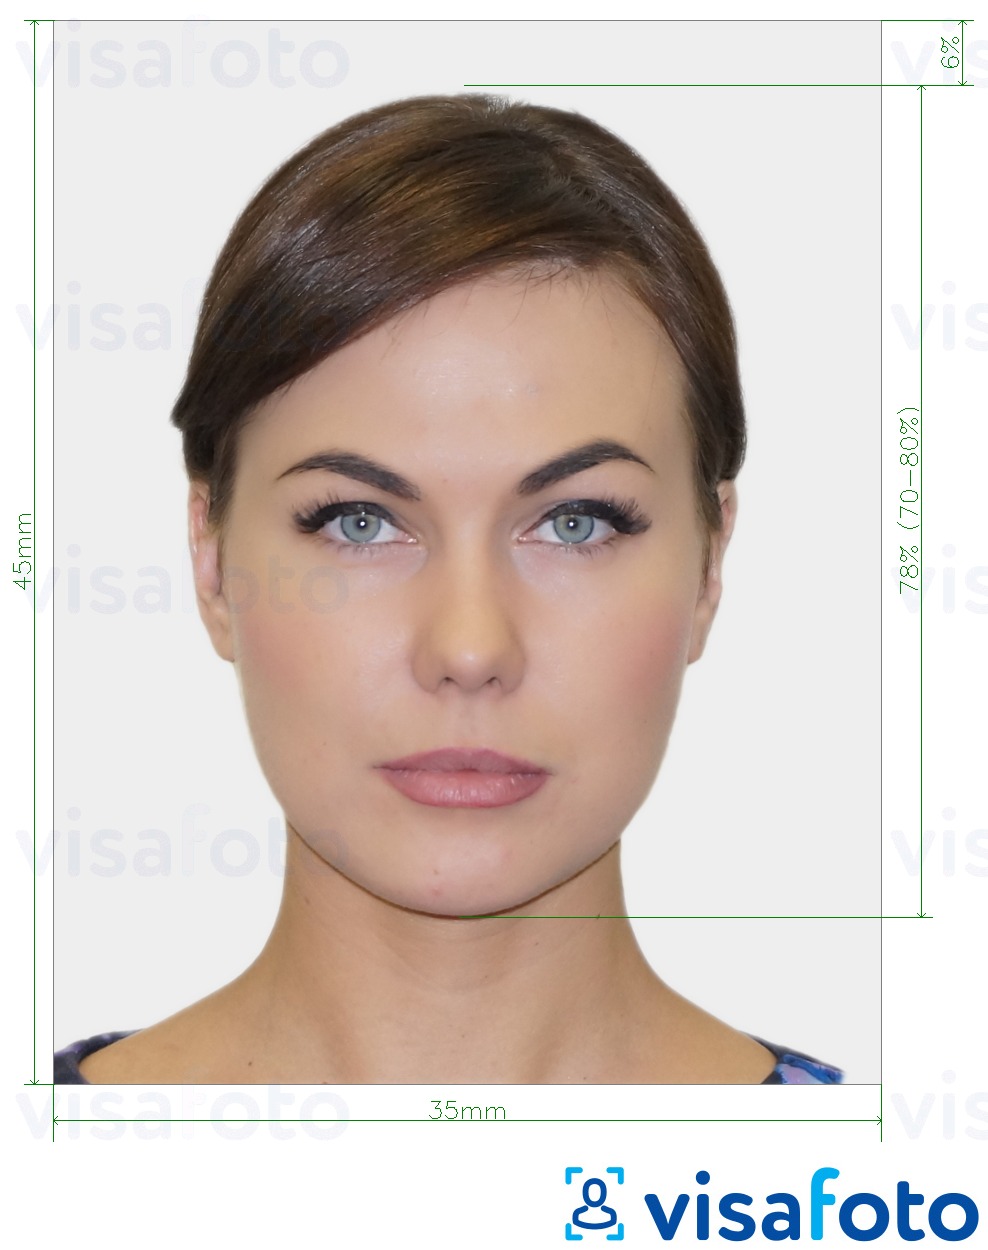 Exemple de foto per a Foto de passaport biomètric amb la mida exacta especificada